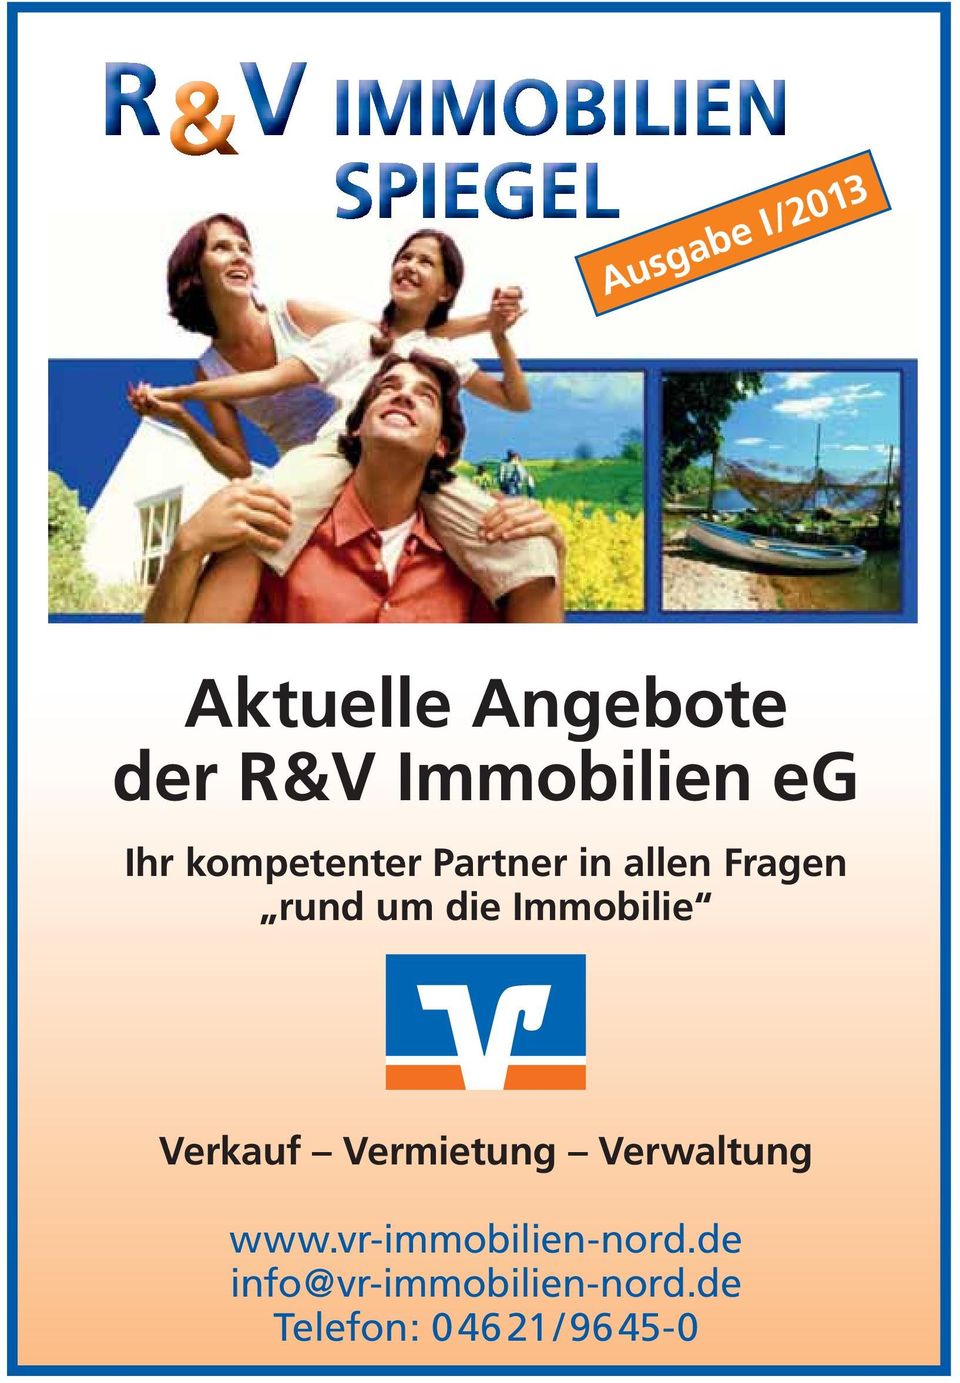 Immobilie Verkauf Vermietung Verwaltung www.